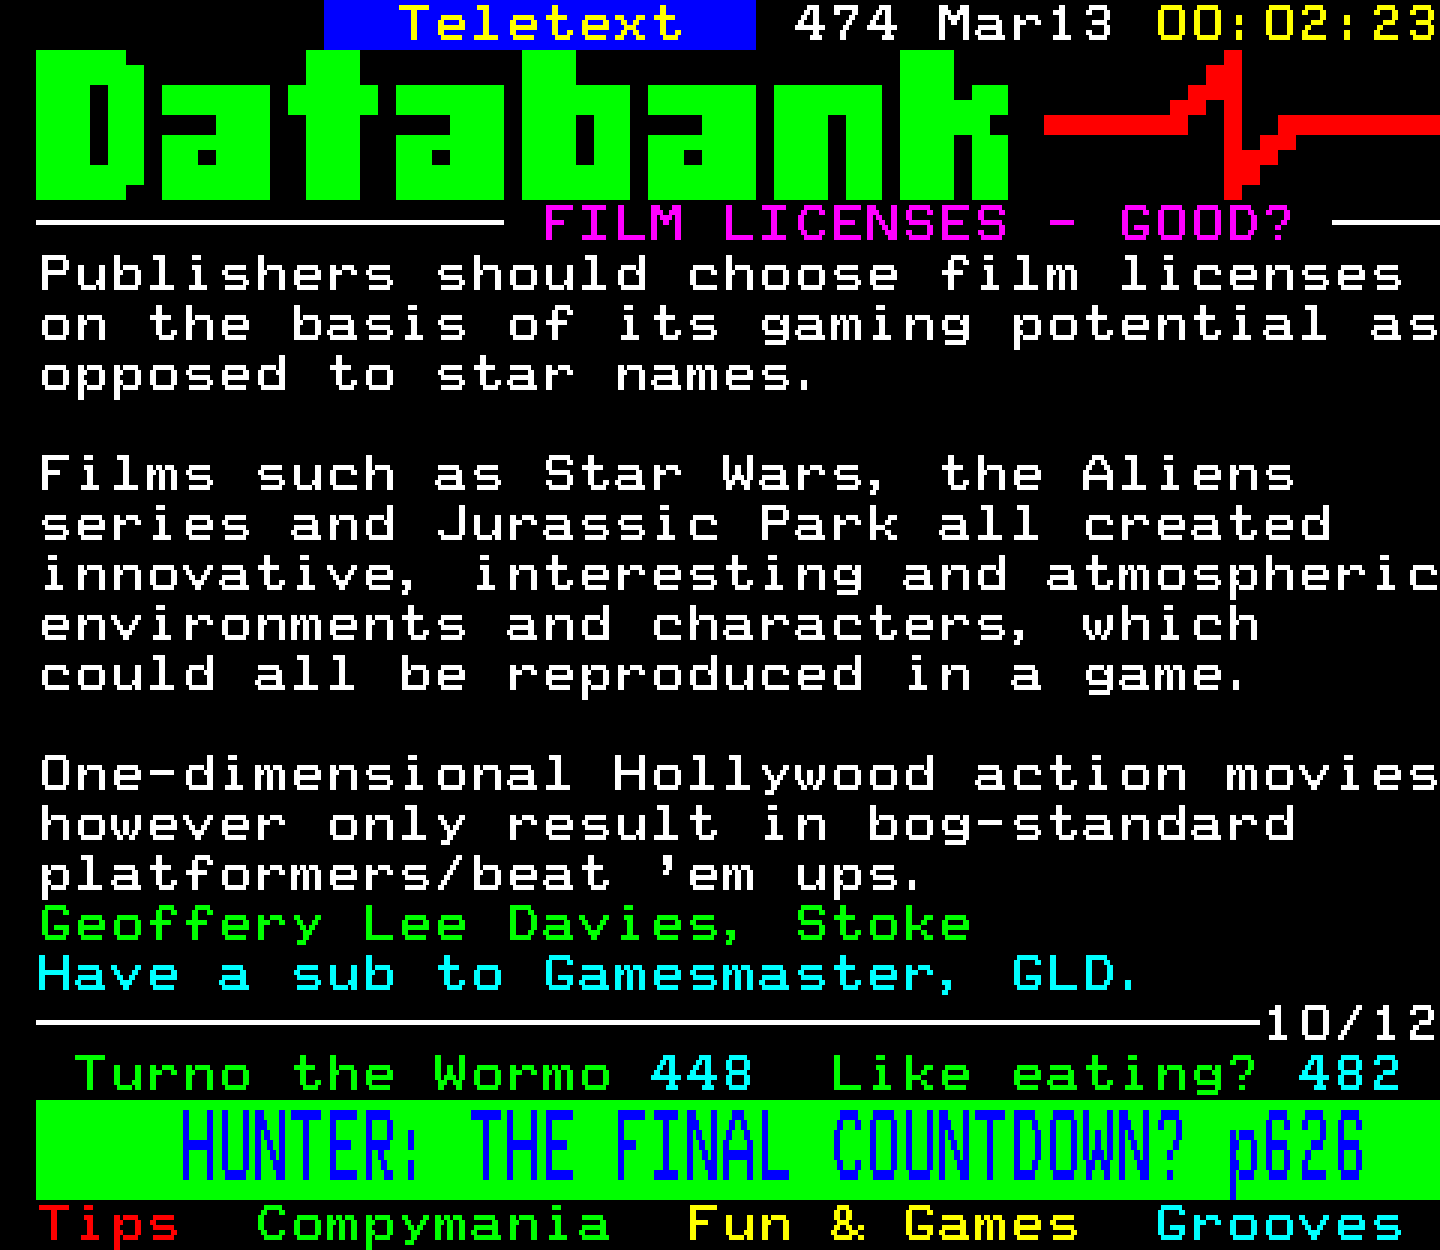 Digitiser, Teletext - 1994